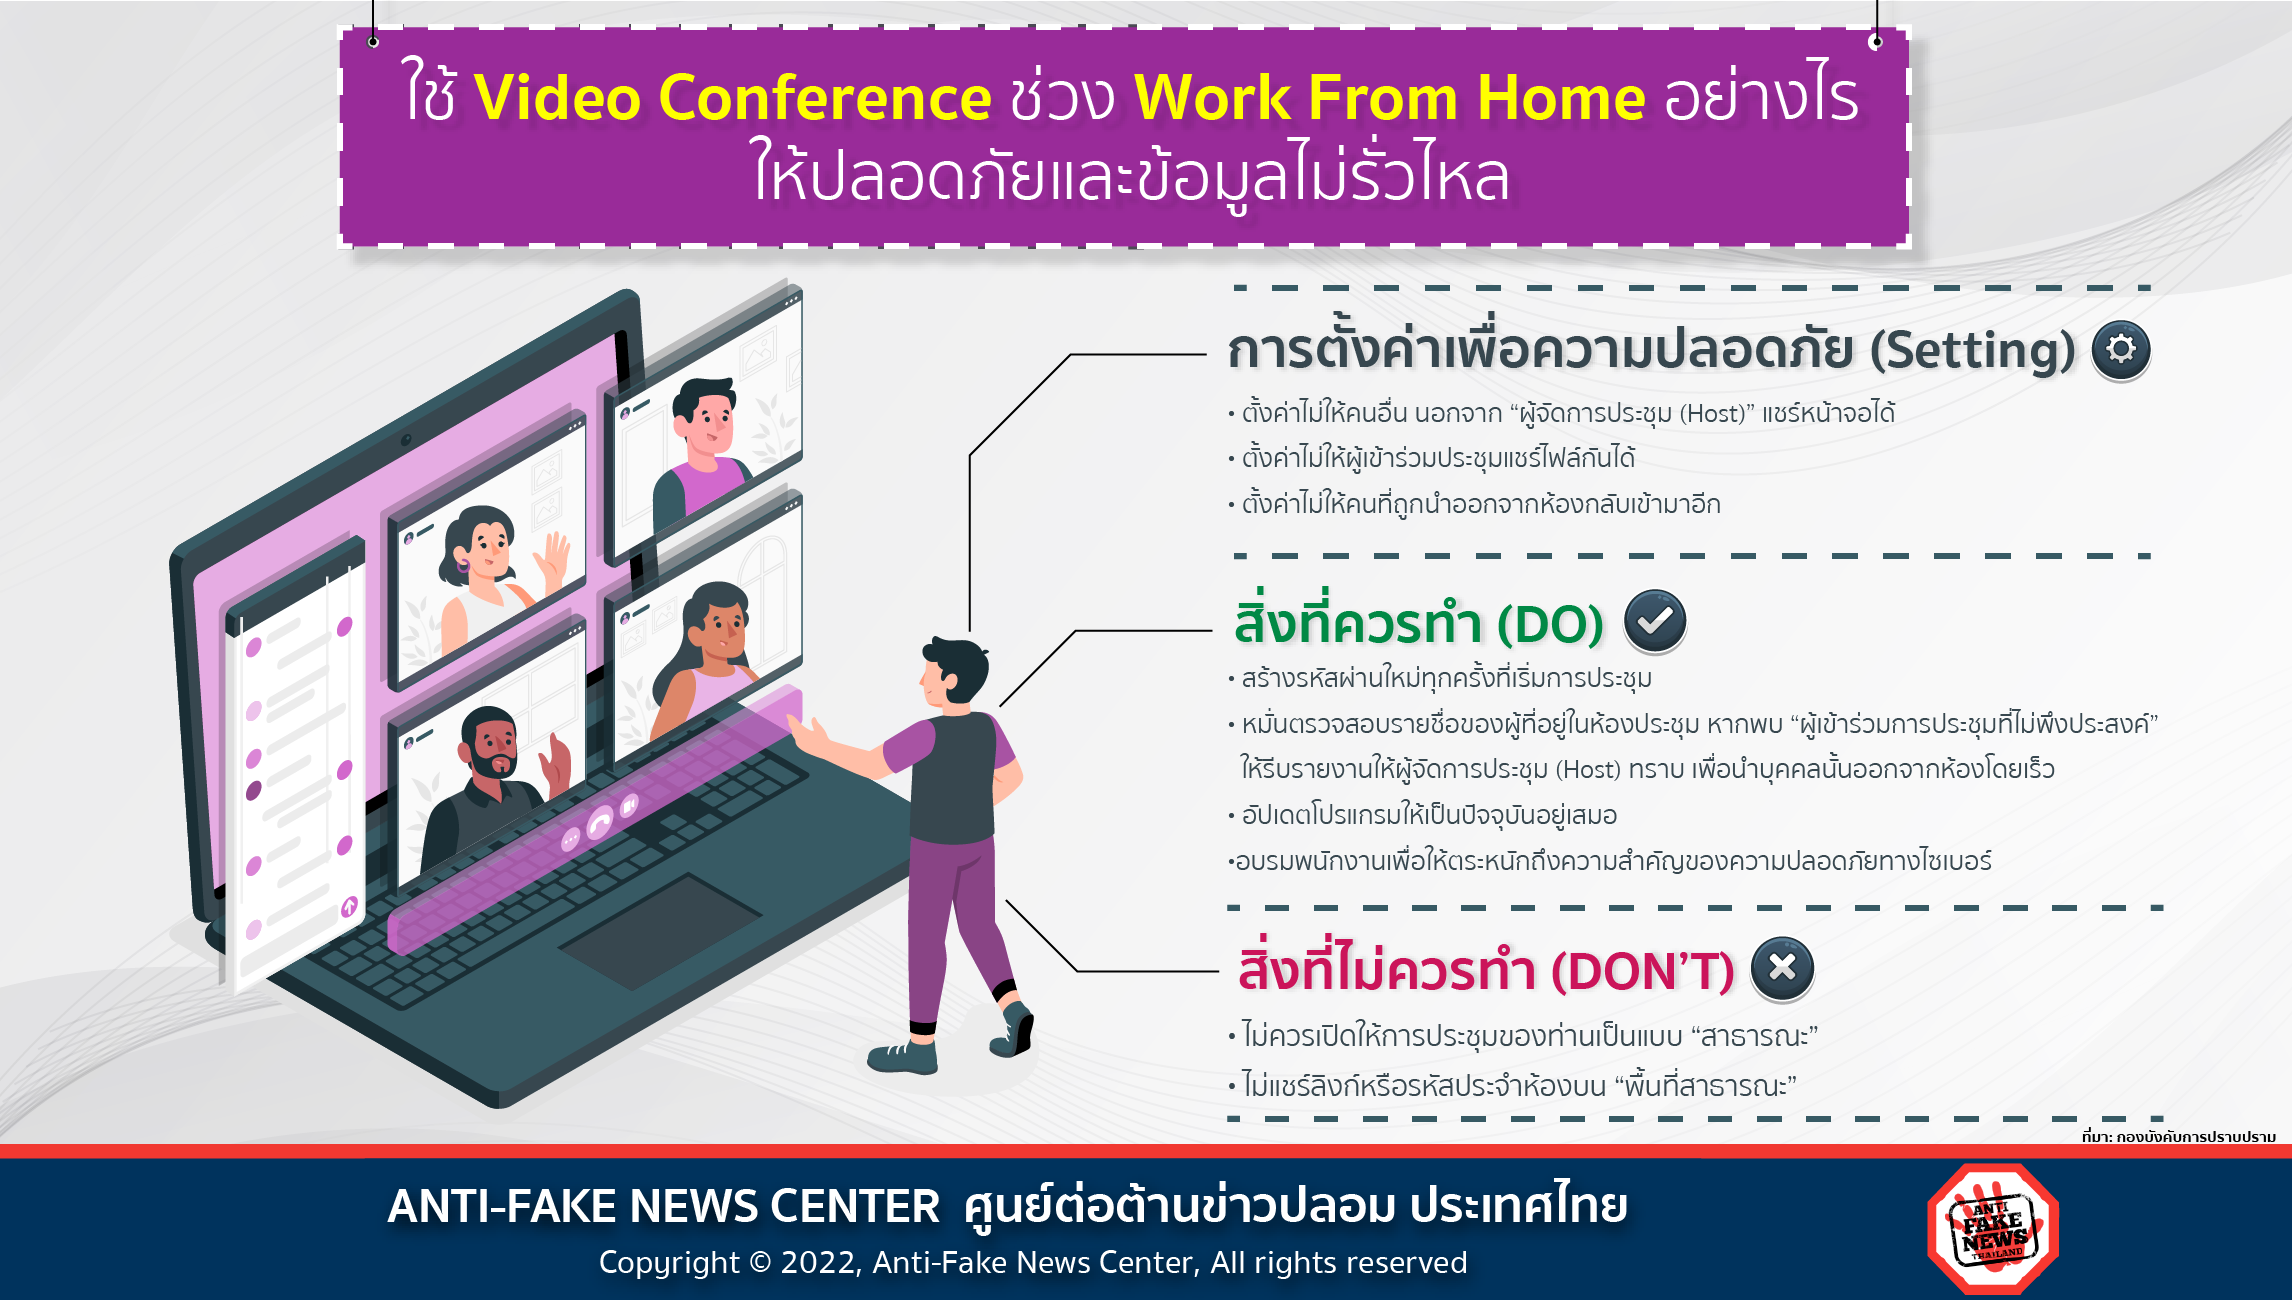 5 Jan 22 ใช้ Video Conference ช่วง Work From Home อย่างไร ให้ปลอดภัยและข้อมูลไม่รั่วไหล TW